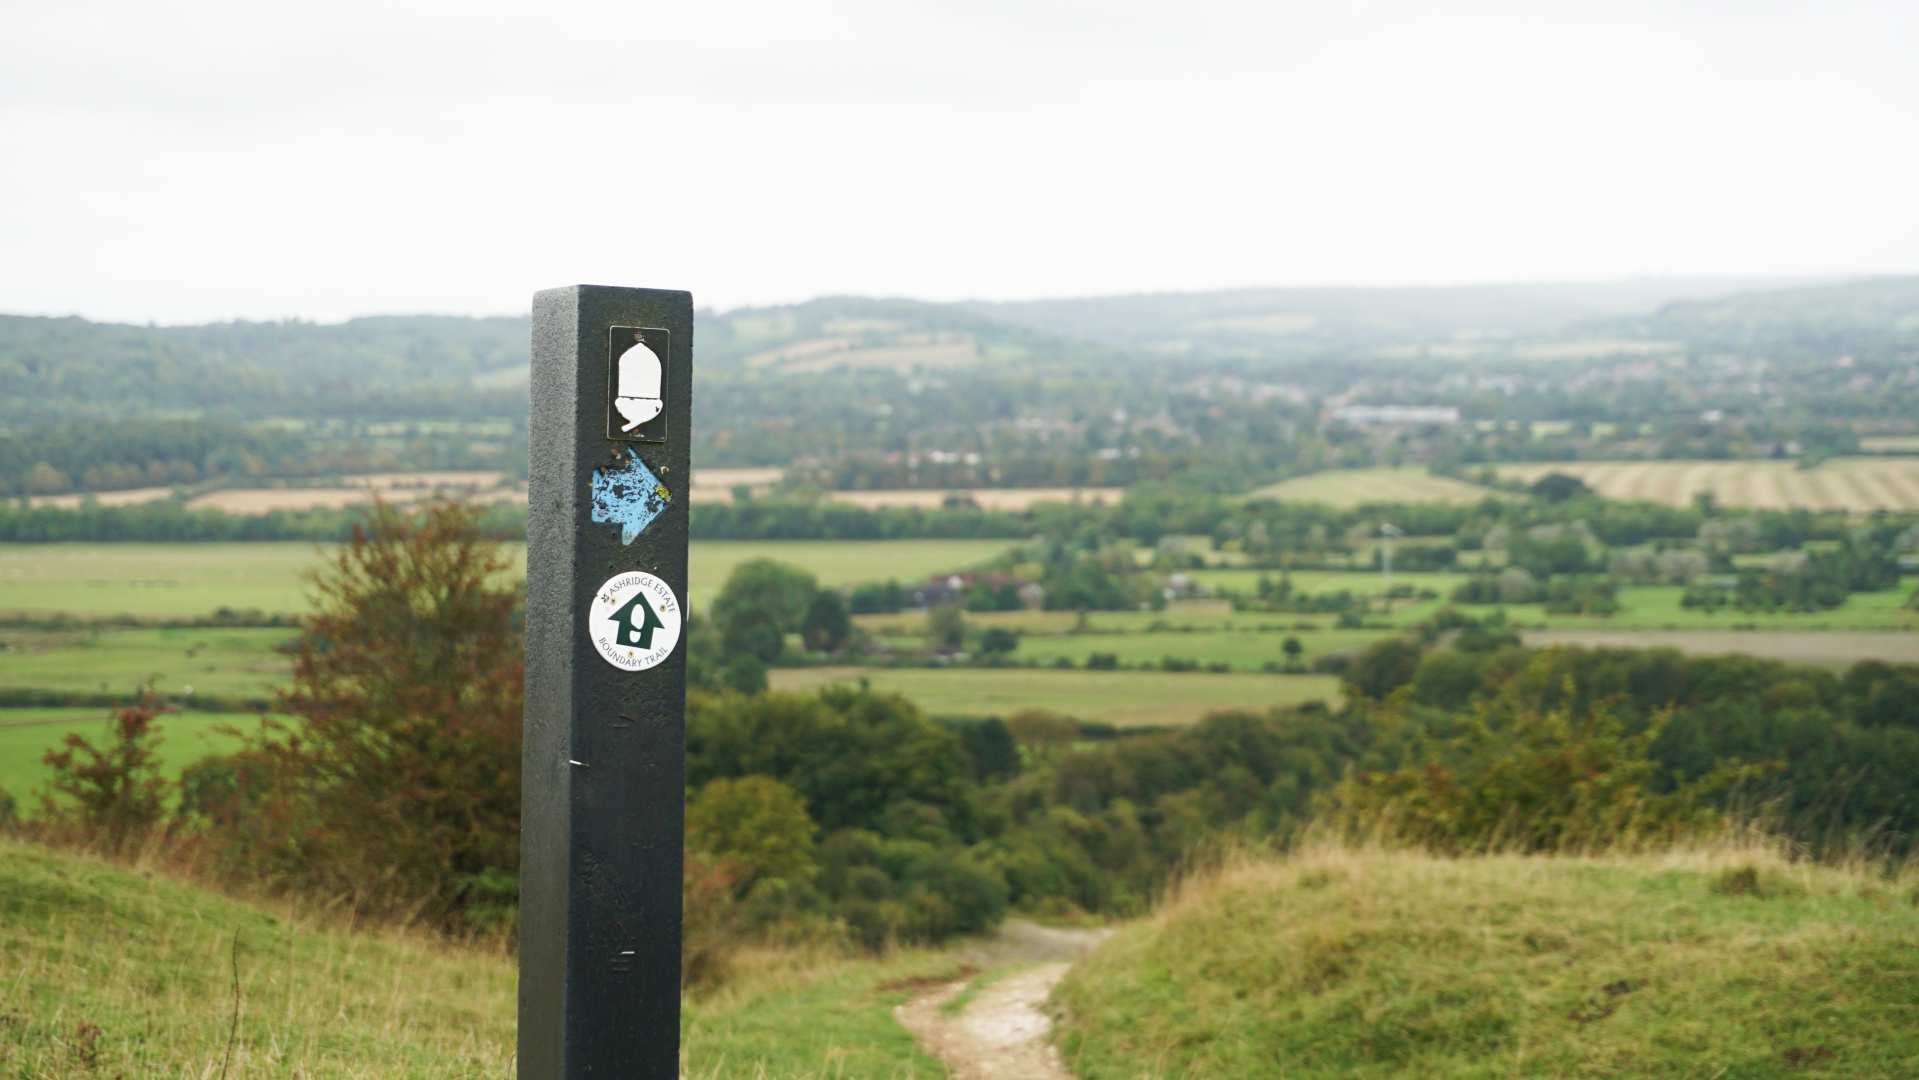 Signpost on Pitstone Hill - Signpost on Pitstone Hill